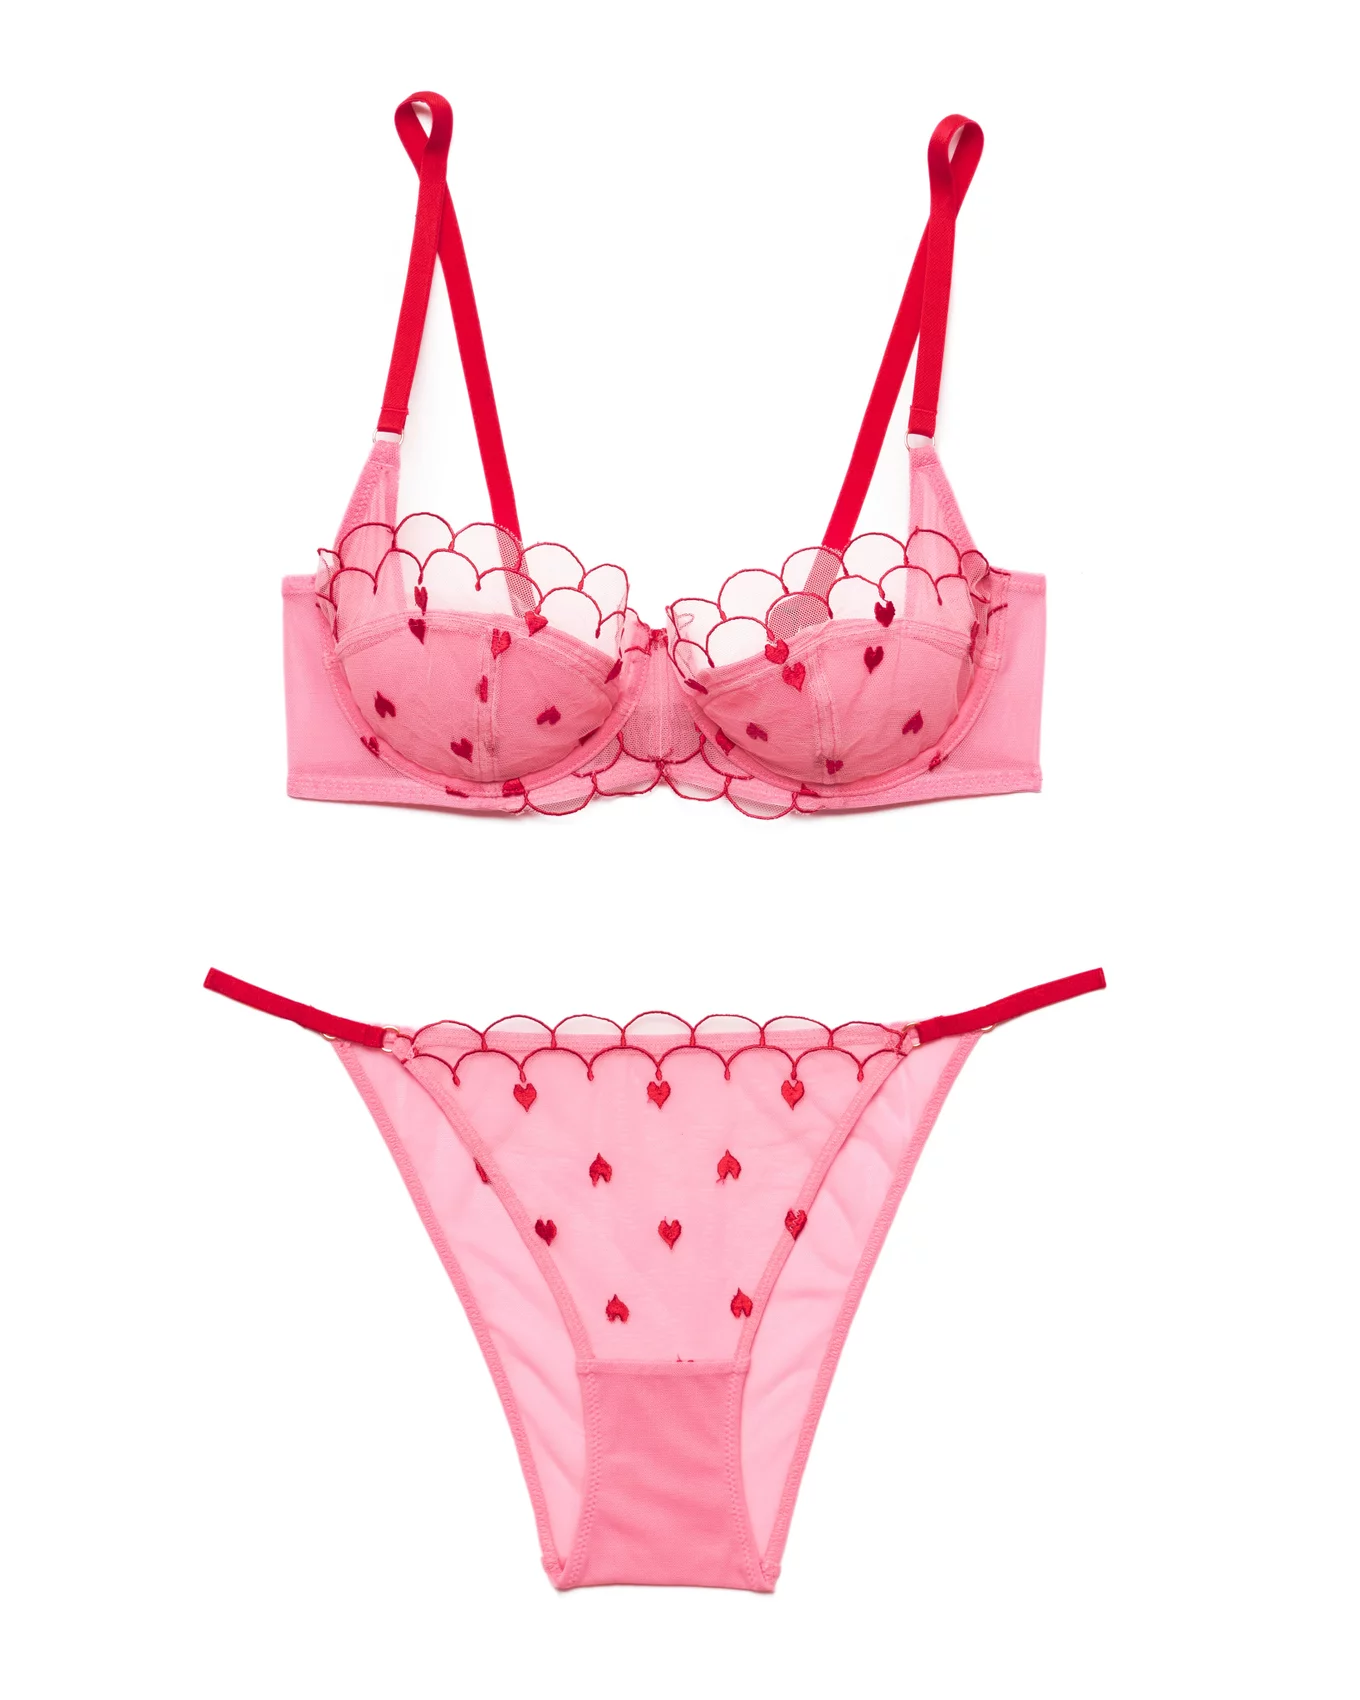 Adore Me Women's Margeaux Balconette Bra 42ddd / Raspberry Sorbet Pink. :  Target